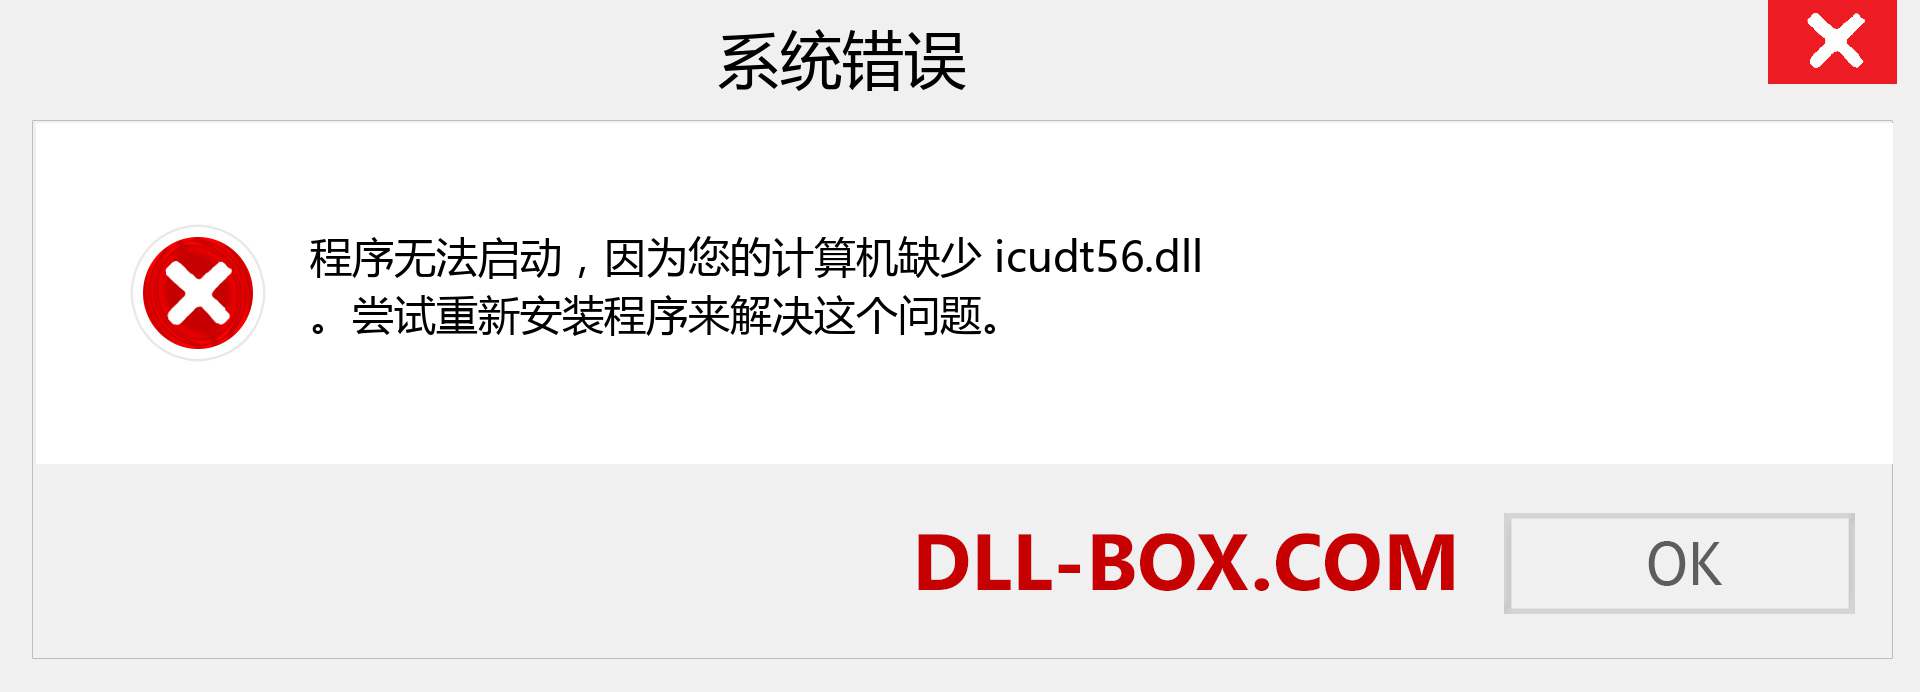 icudt56.dll 文件丢失？。 适用于 Windows 7、8、10 的下载 - 修复 Windows、照片、图像上的 icudt56 dll 丢失错误